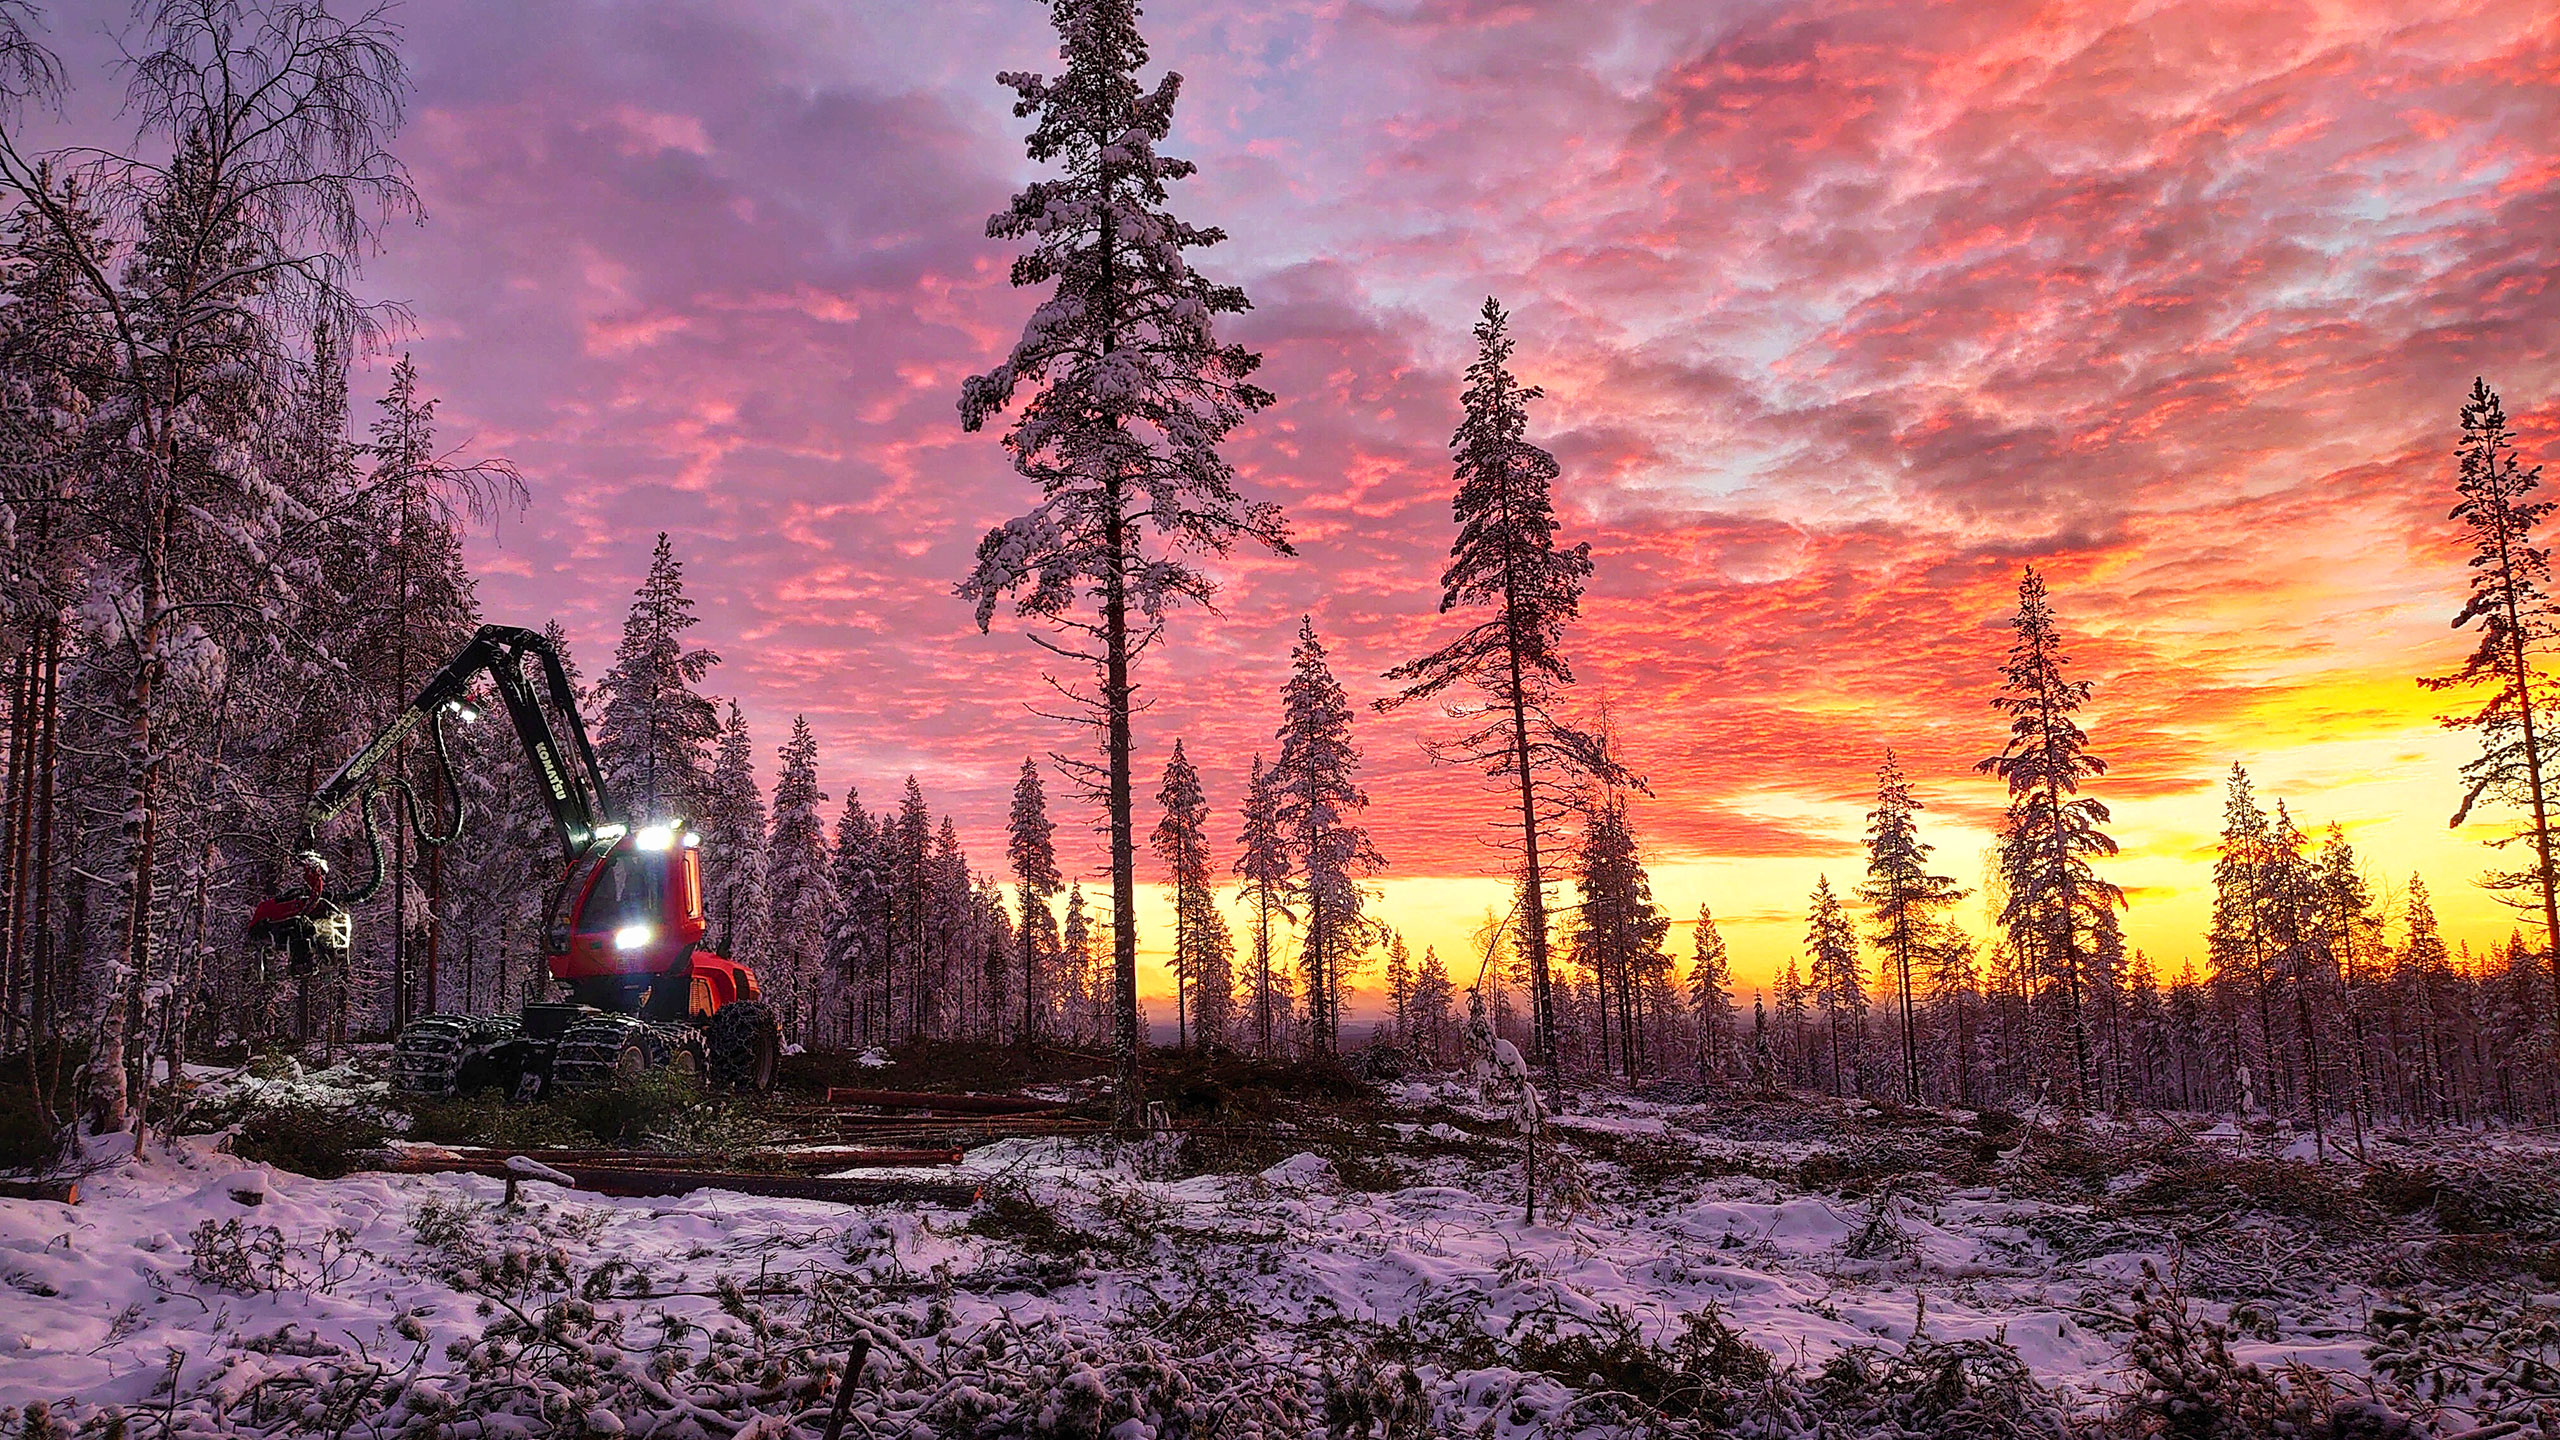 Komatsu Forestin valokuvauskilpailu joulukuu 2020, 1. palkinto: Tuomo Väyrynen